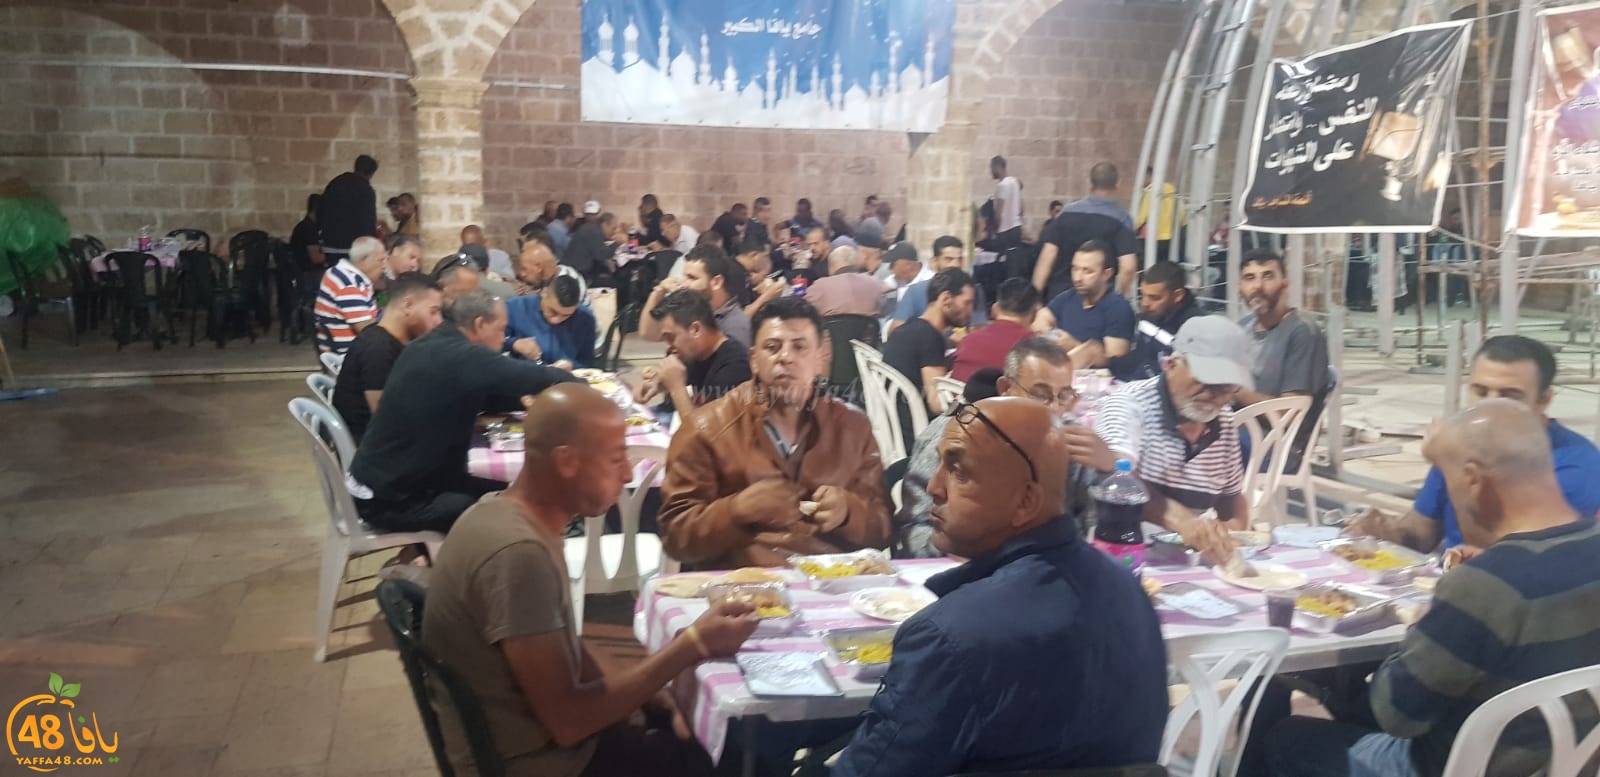  بالصور: إفطار جماعي في مسجد يافا الكبير المحمودية ضمن مشروع إفطار صائم السنوي